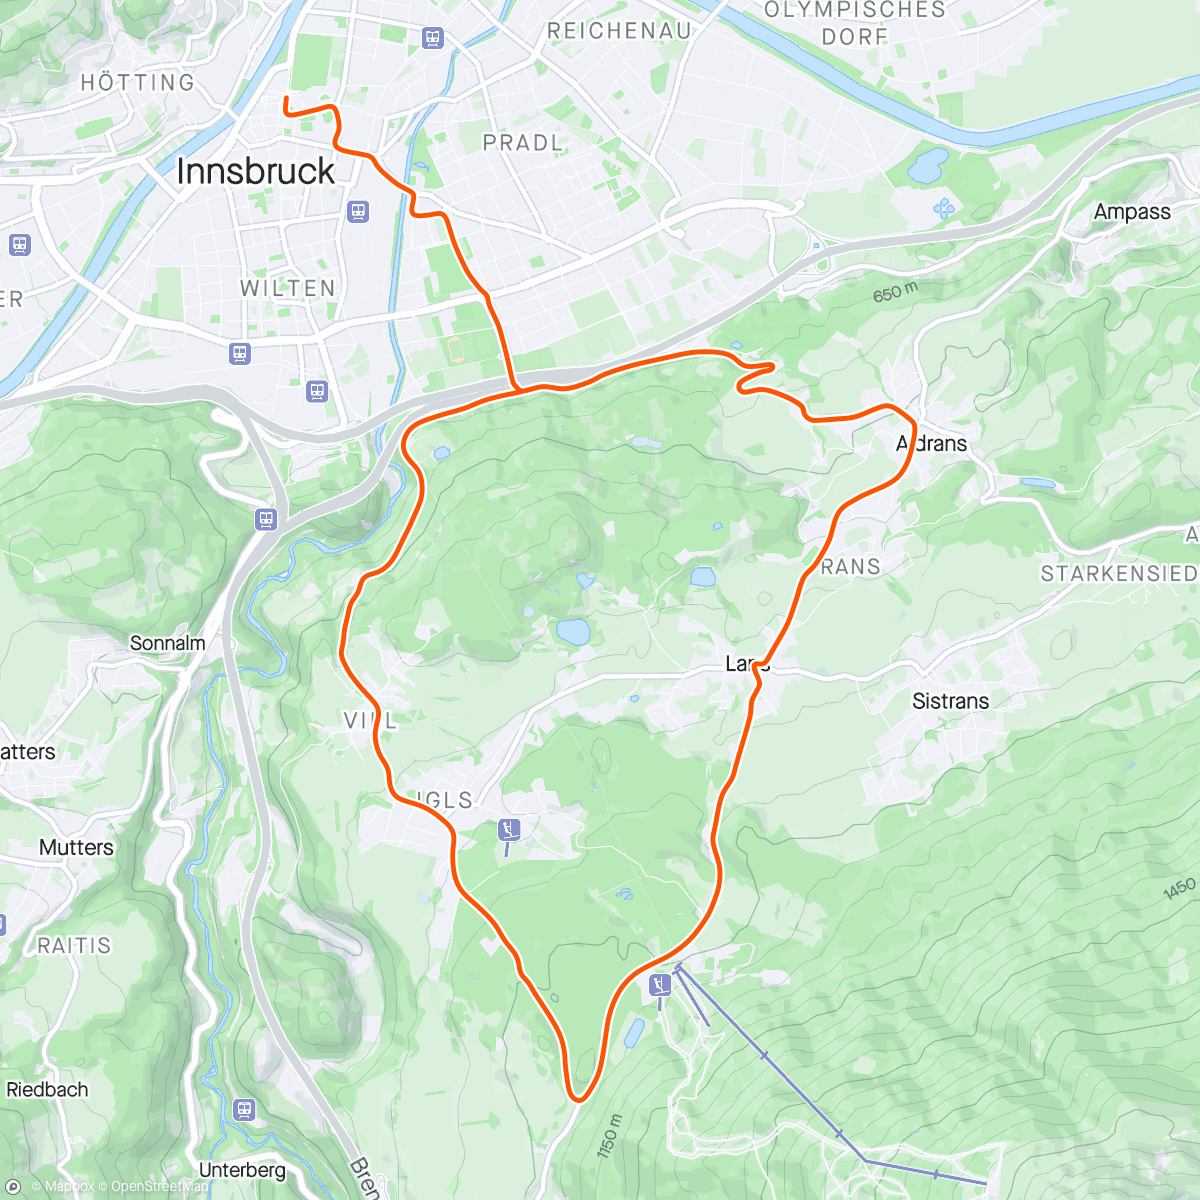 「Zwift - Group Ride: SZR Climbing Crew (B) on Lutscher in Innsbruck」活動的地圖